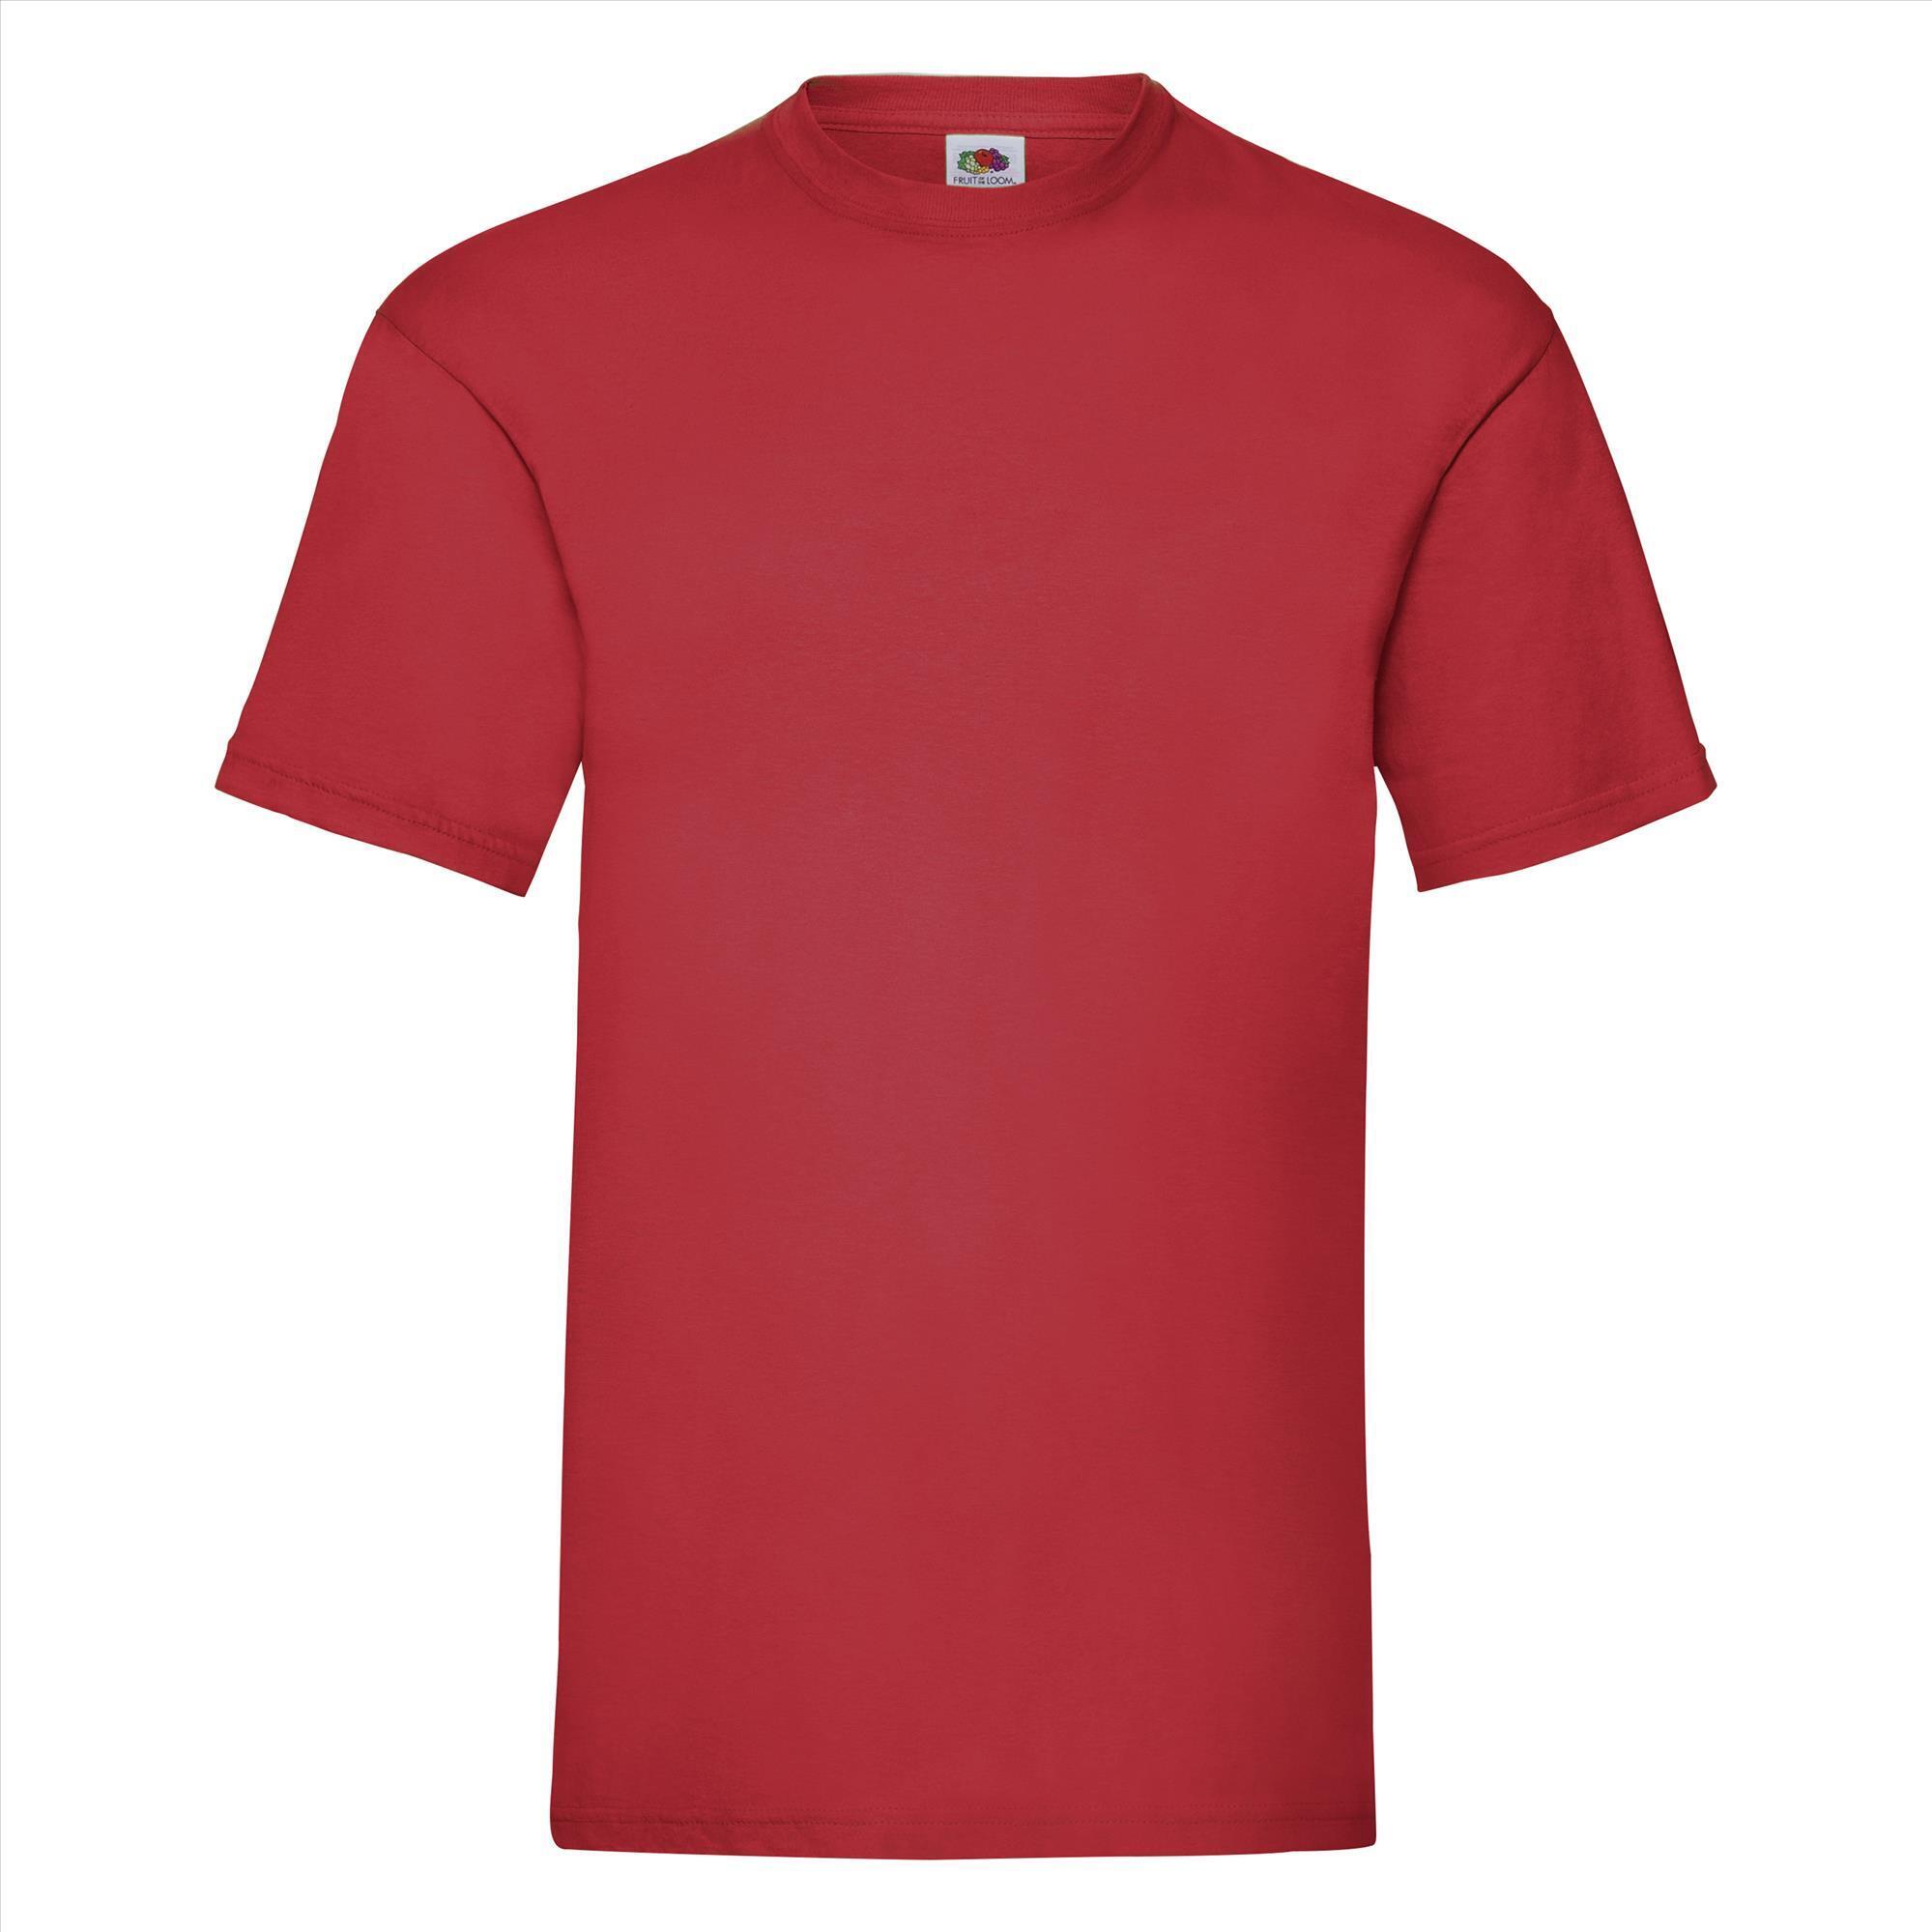 T-shirt voor mannen rood personaliseren T-shirt bedrukken